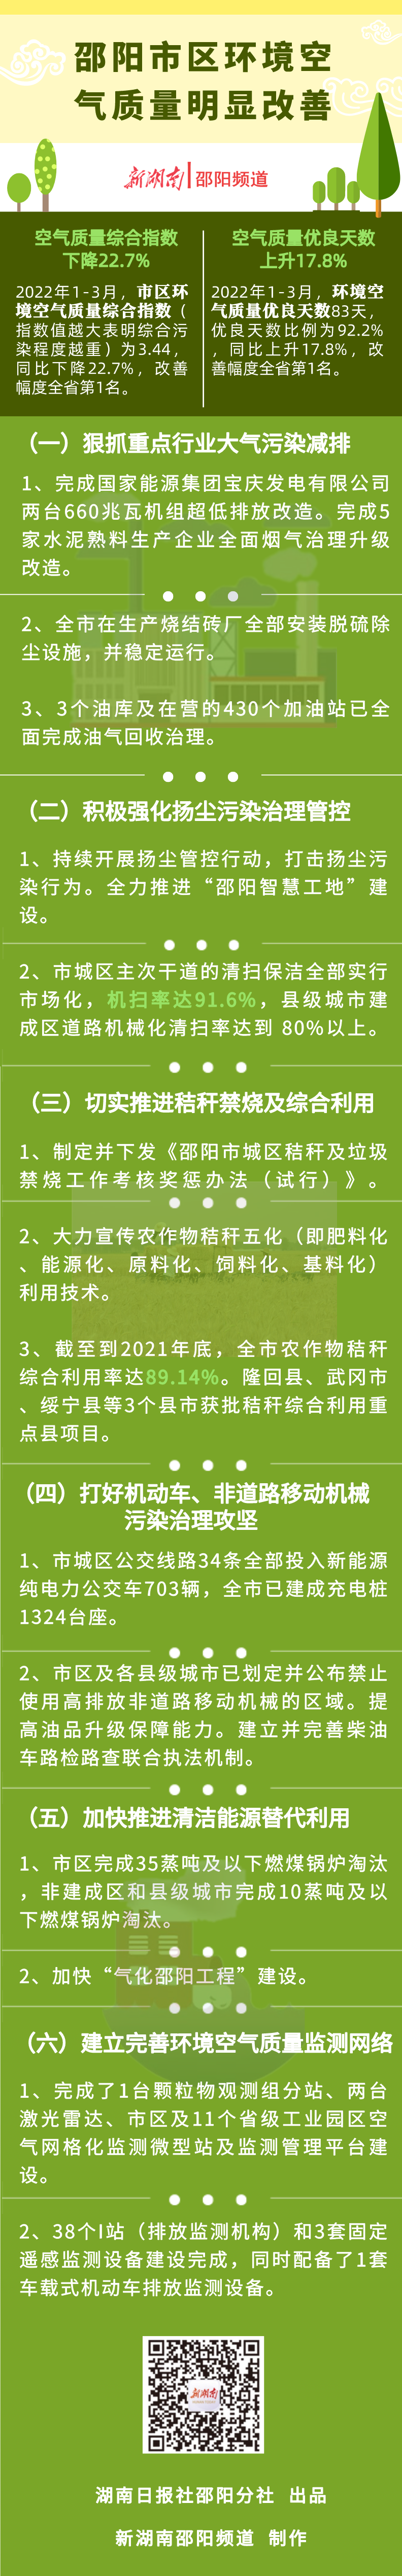 海报 | 邵阳市区环境空气质量明显改善